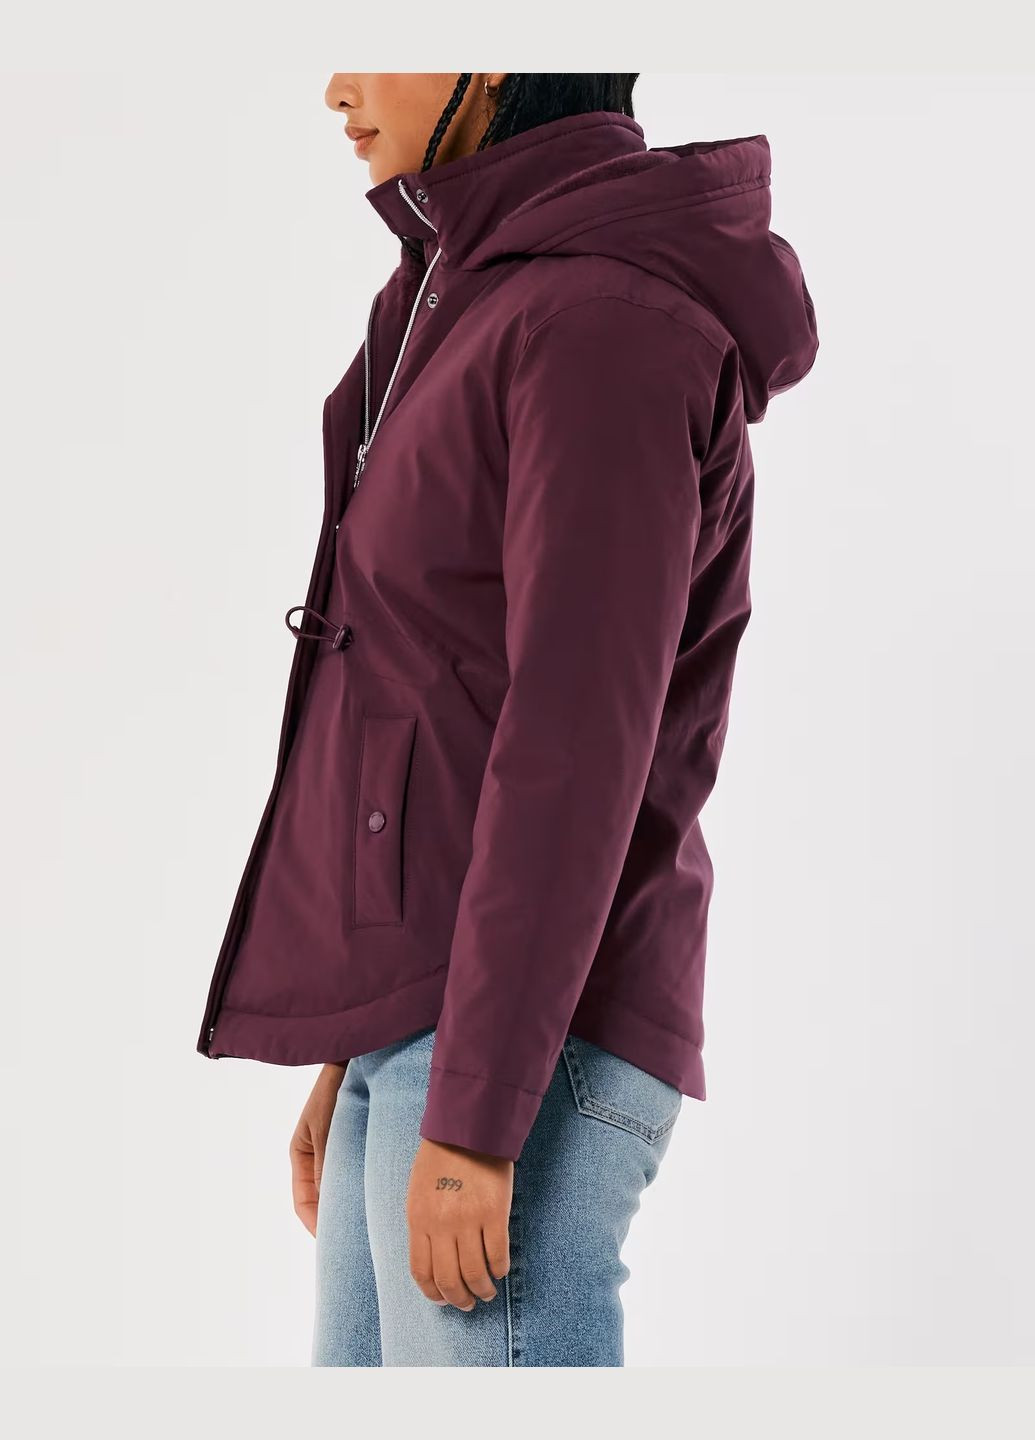 Бордовая демисезонная куртка демисезонная - женская куртка hc9526w Hollister